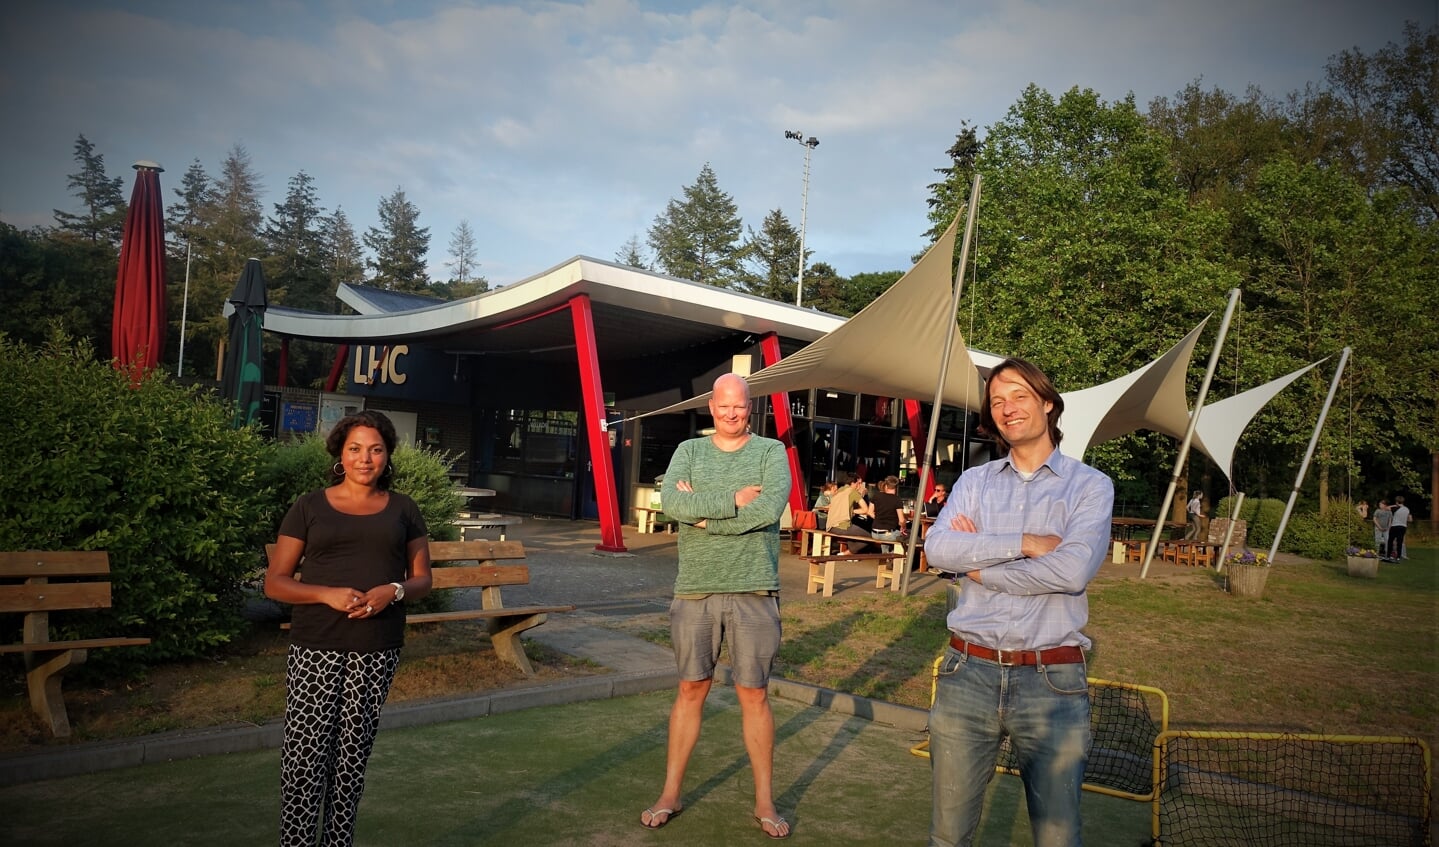 Vlnr: Selma Lotterman, Bas van Bolhuis en voorzitter Tom van der Laan van LHC. Foto: Henri Bruntink